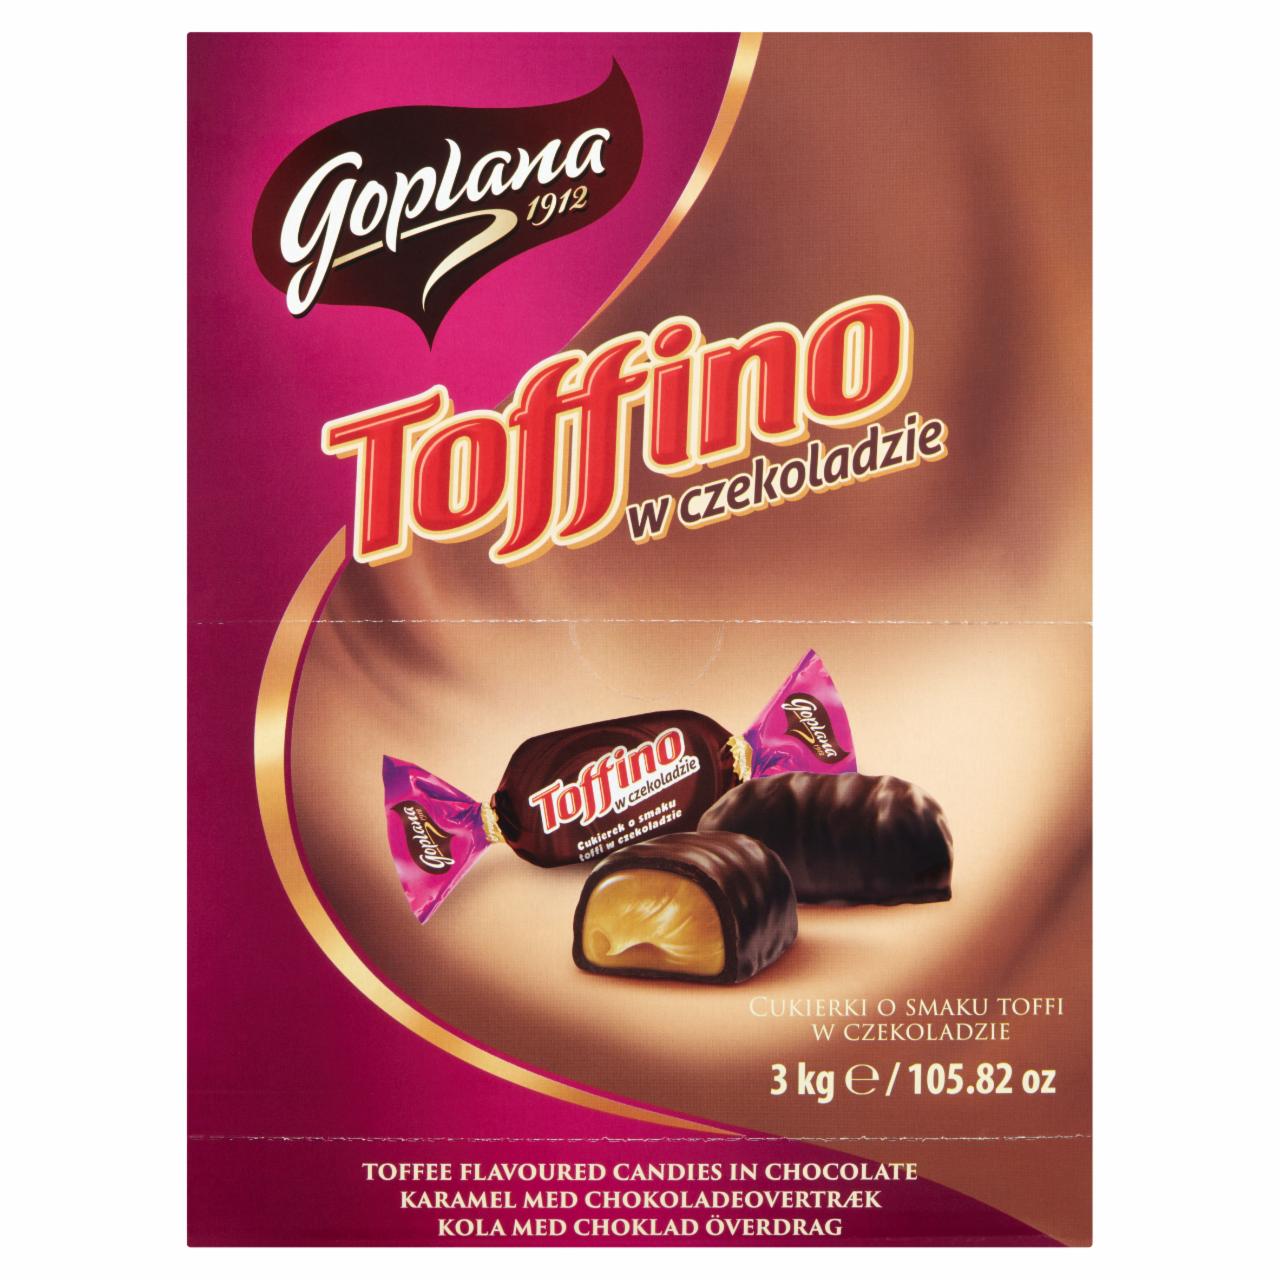 Zdjęcia - Goplana Toffino Cukierki o smaku toffi w czekoladzie 3 kg